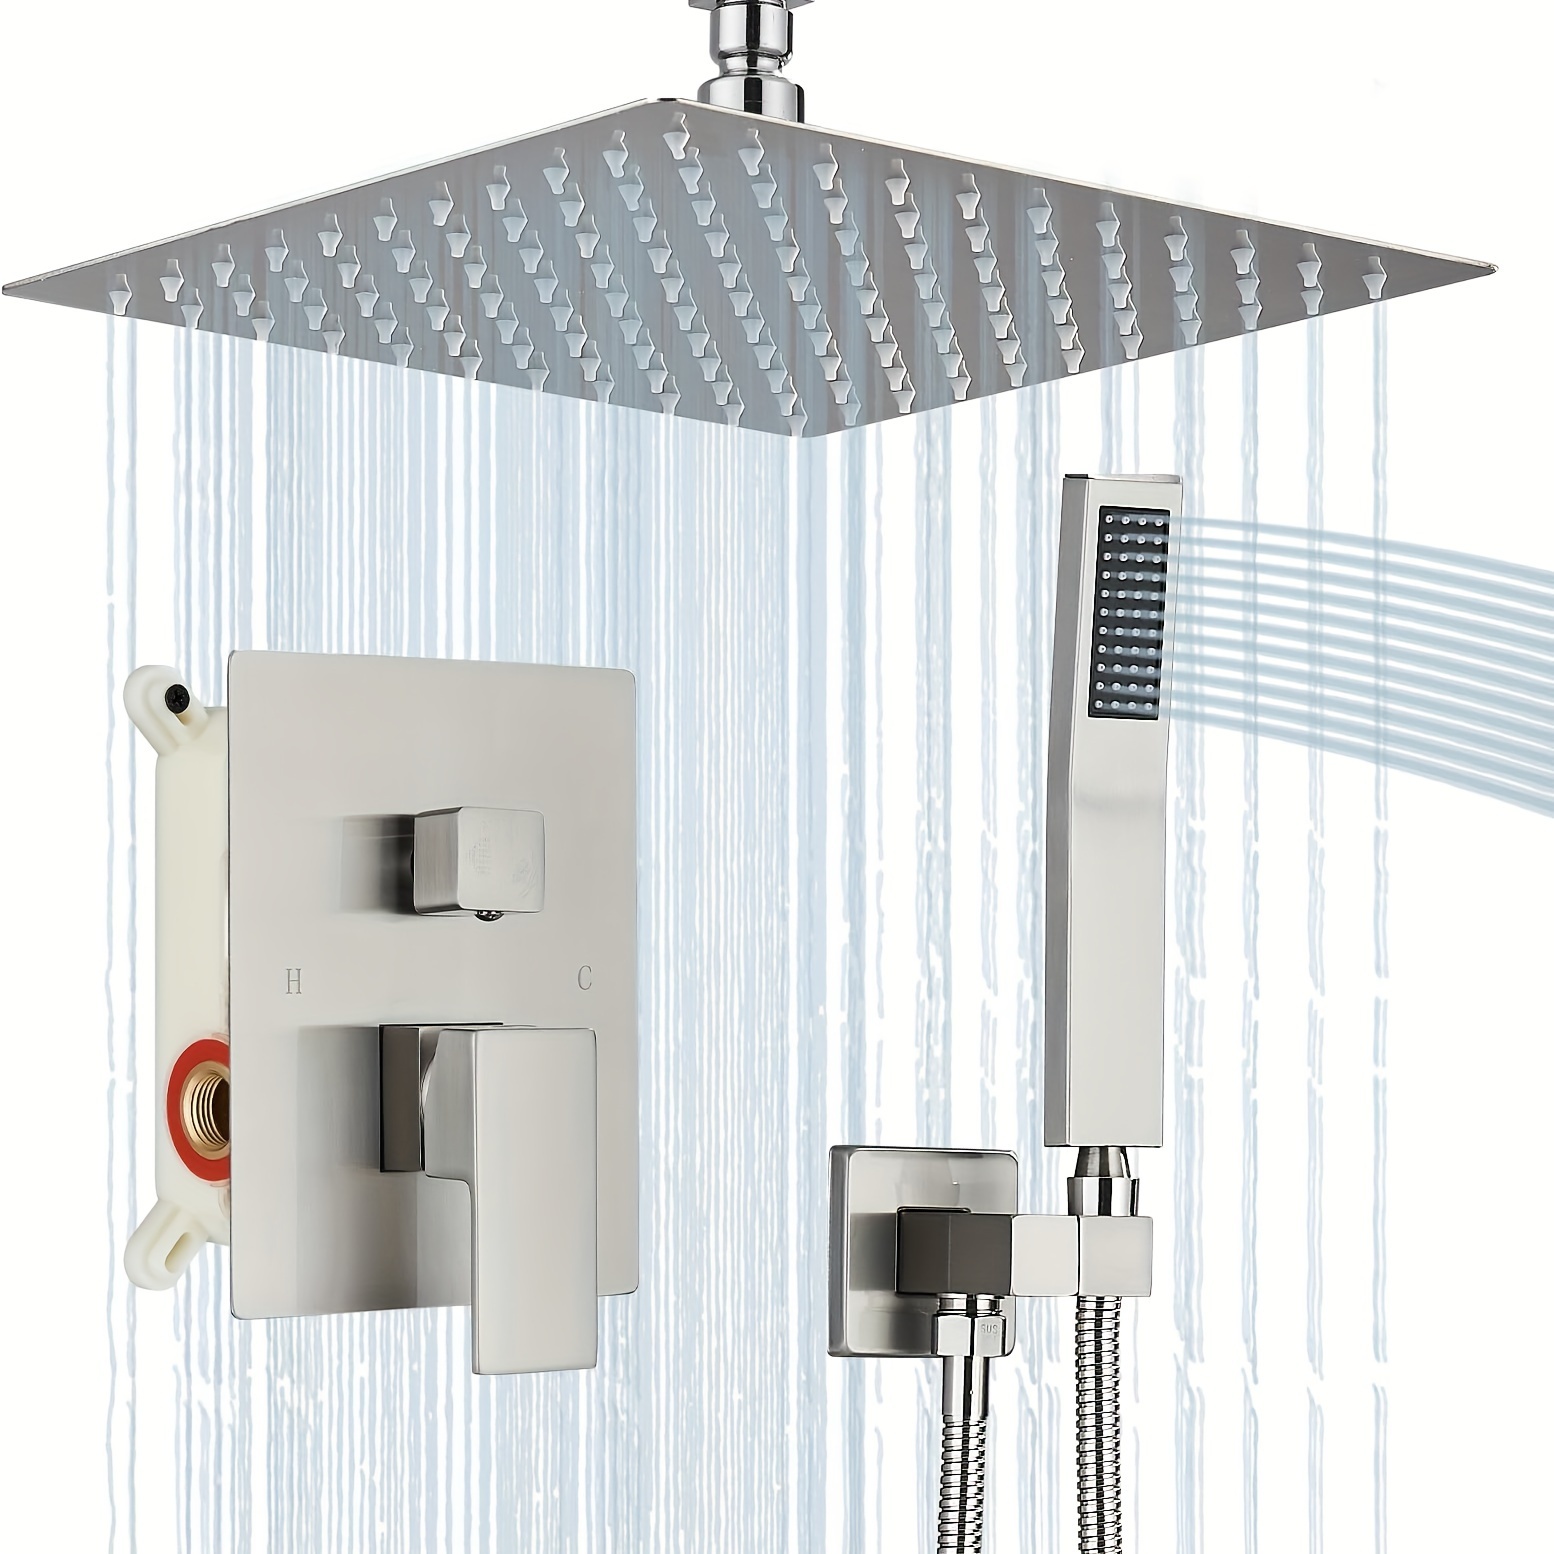 Kit de ducha modelo cuadrado con salida de agua, teleducha y repisa Tecom  Shelf DKITDSHS